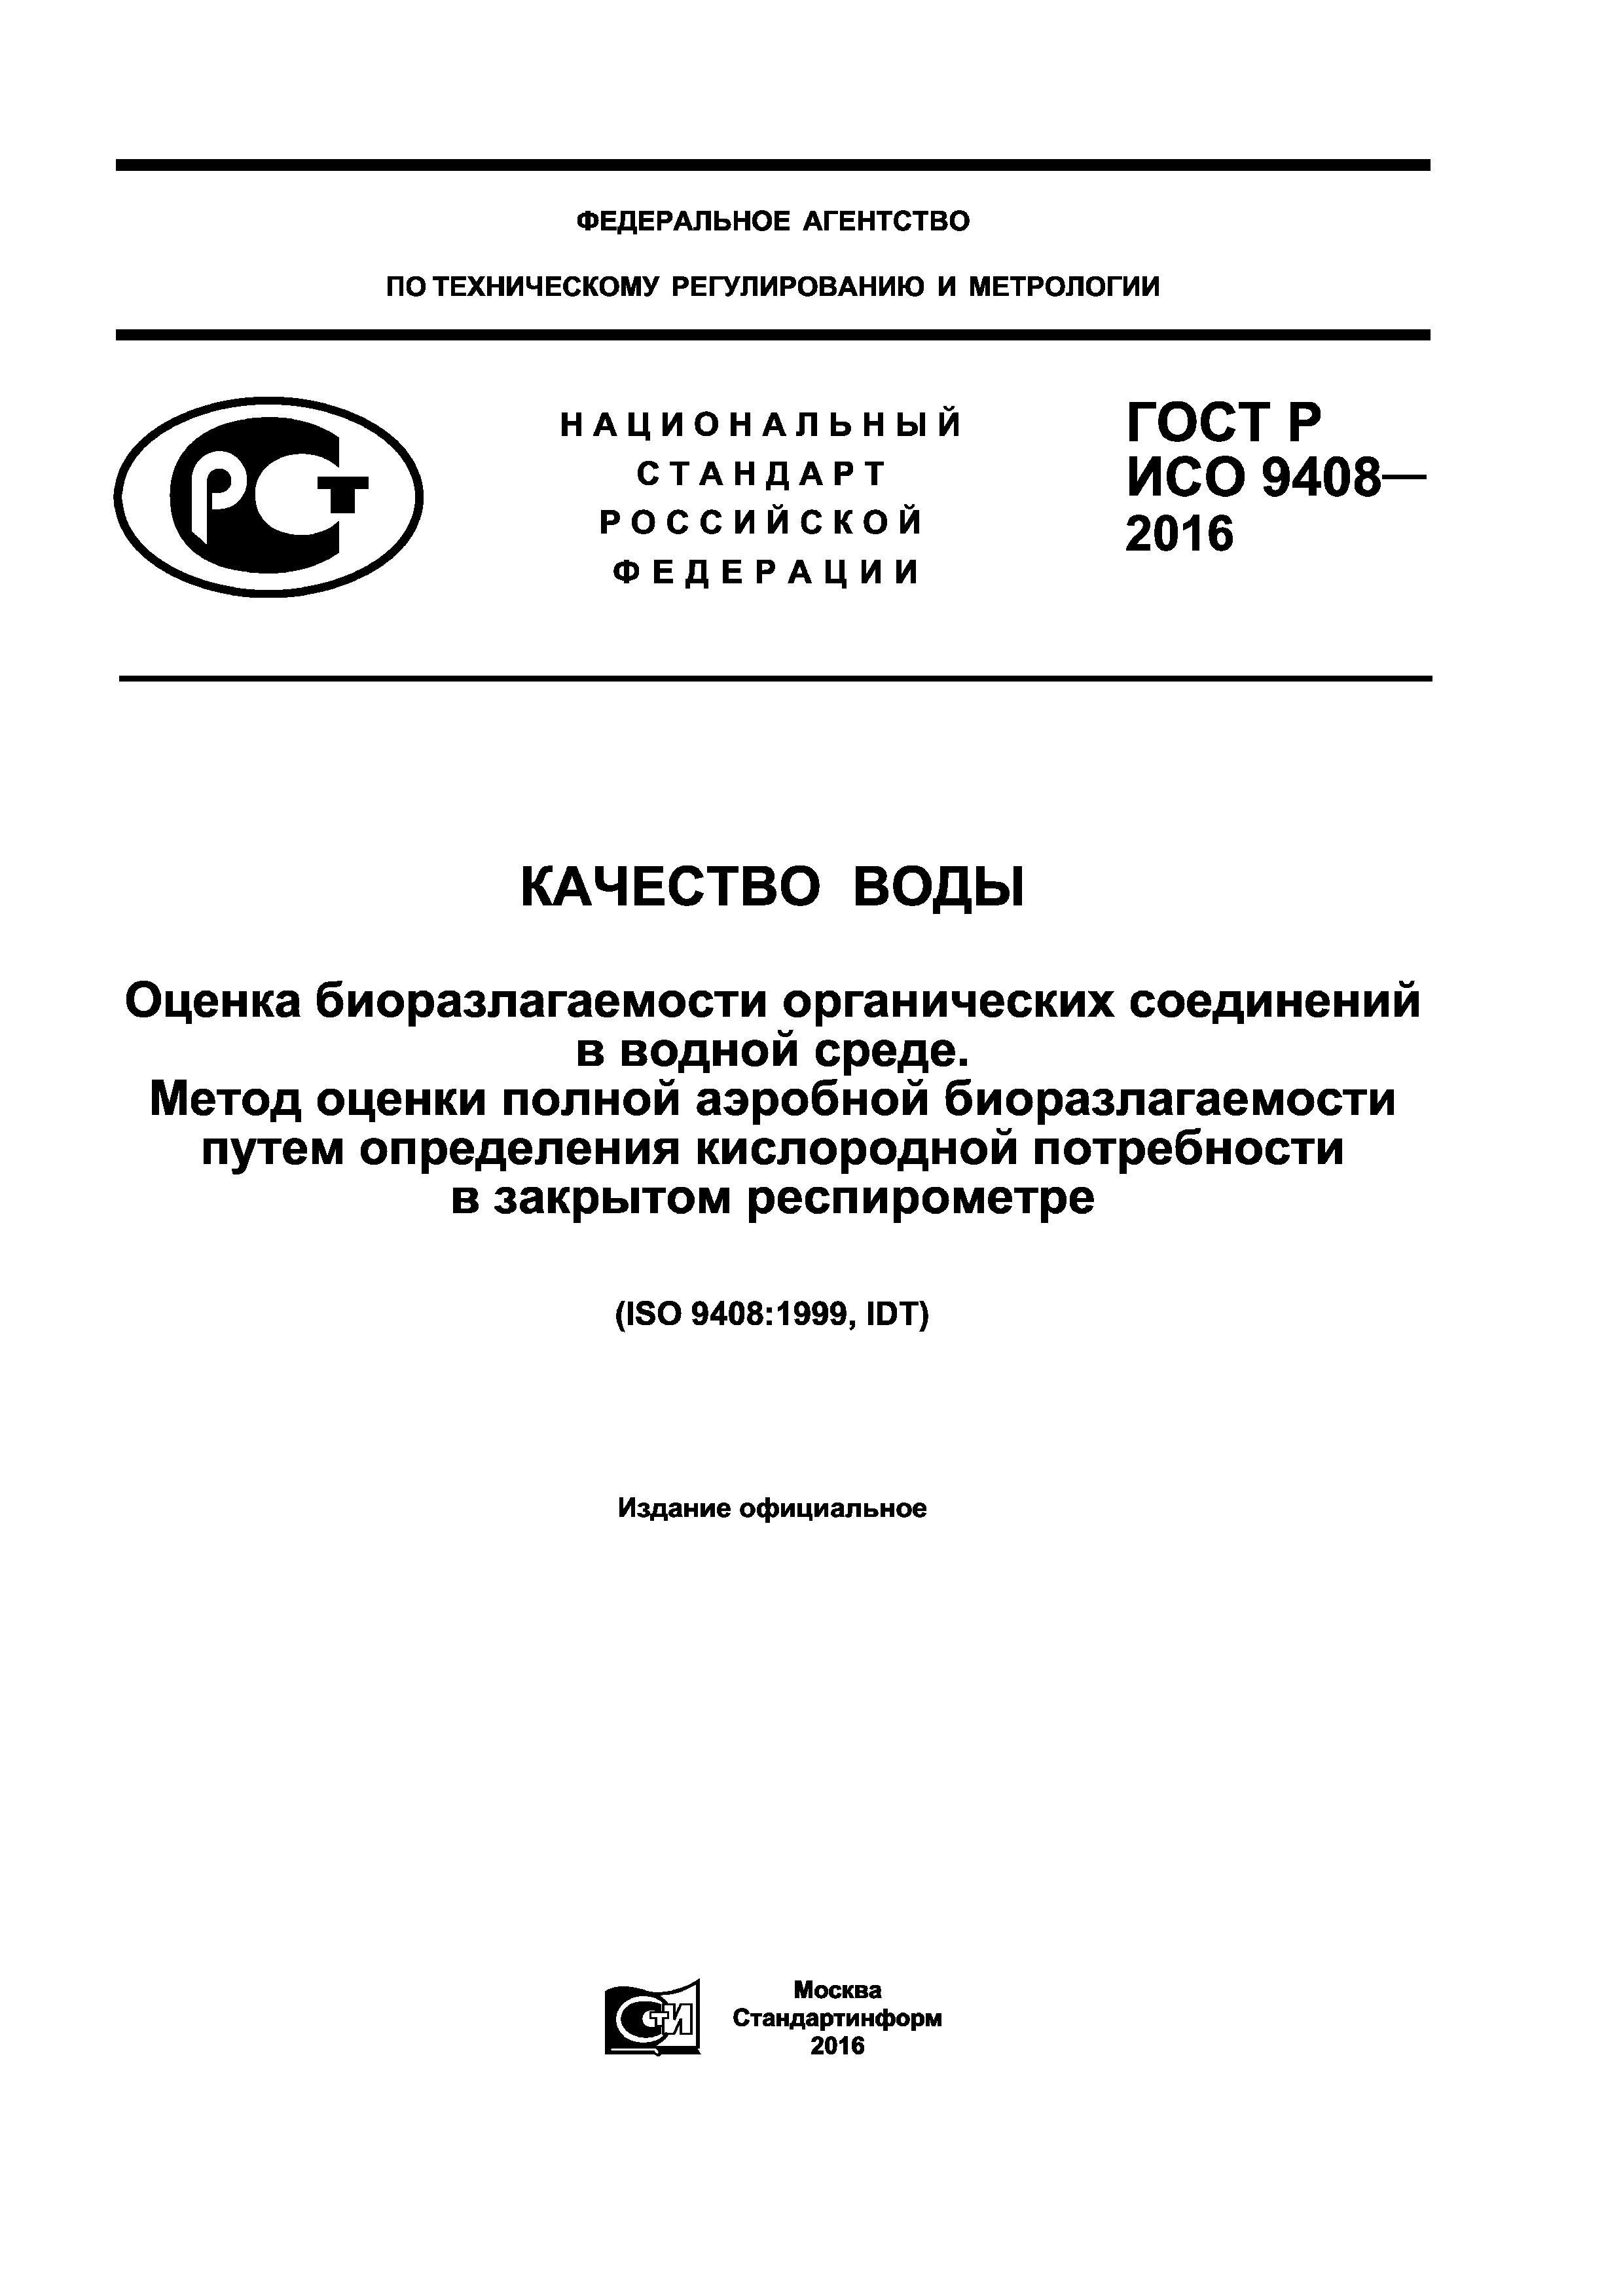 ГОСТ Р ИСО 9408-2016